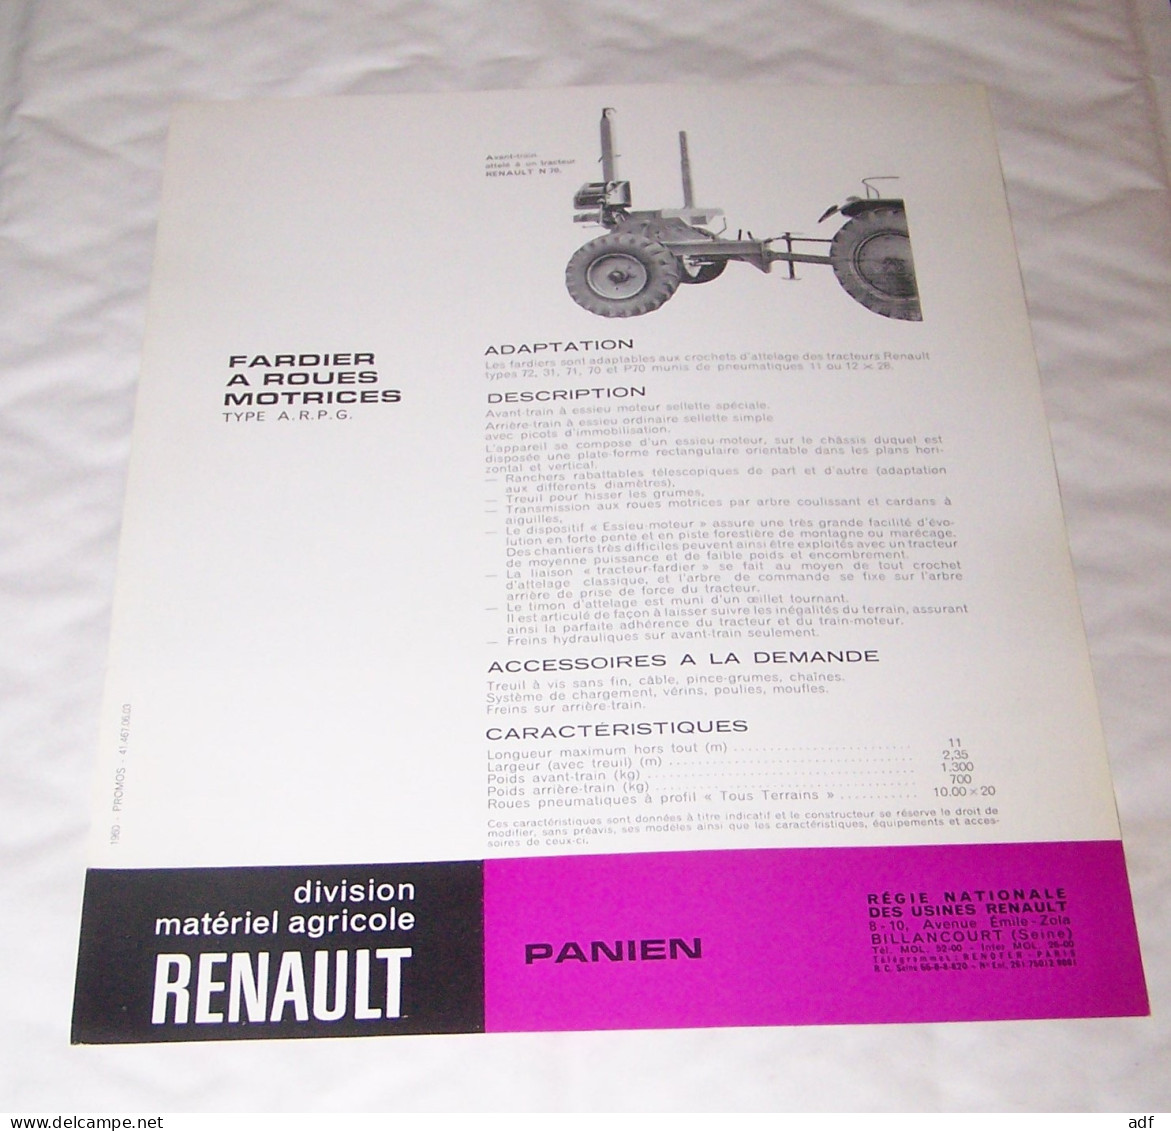 FEUILLET PUB PUBLICITAIRE MATERIEL RENAULT FARDIER A ROUES MOTRICES PANIEN ( TRACTEUR, TRACTEURS, MOTOCULTURE ) - Tractores